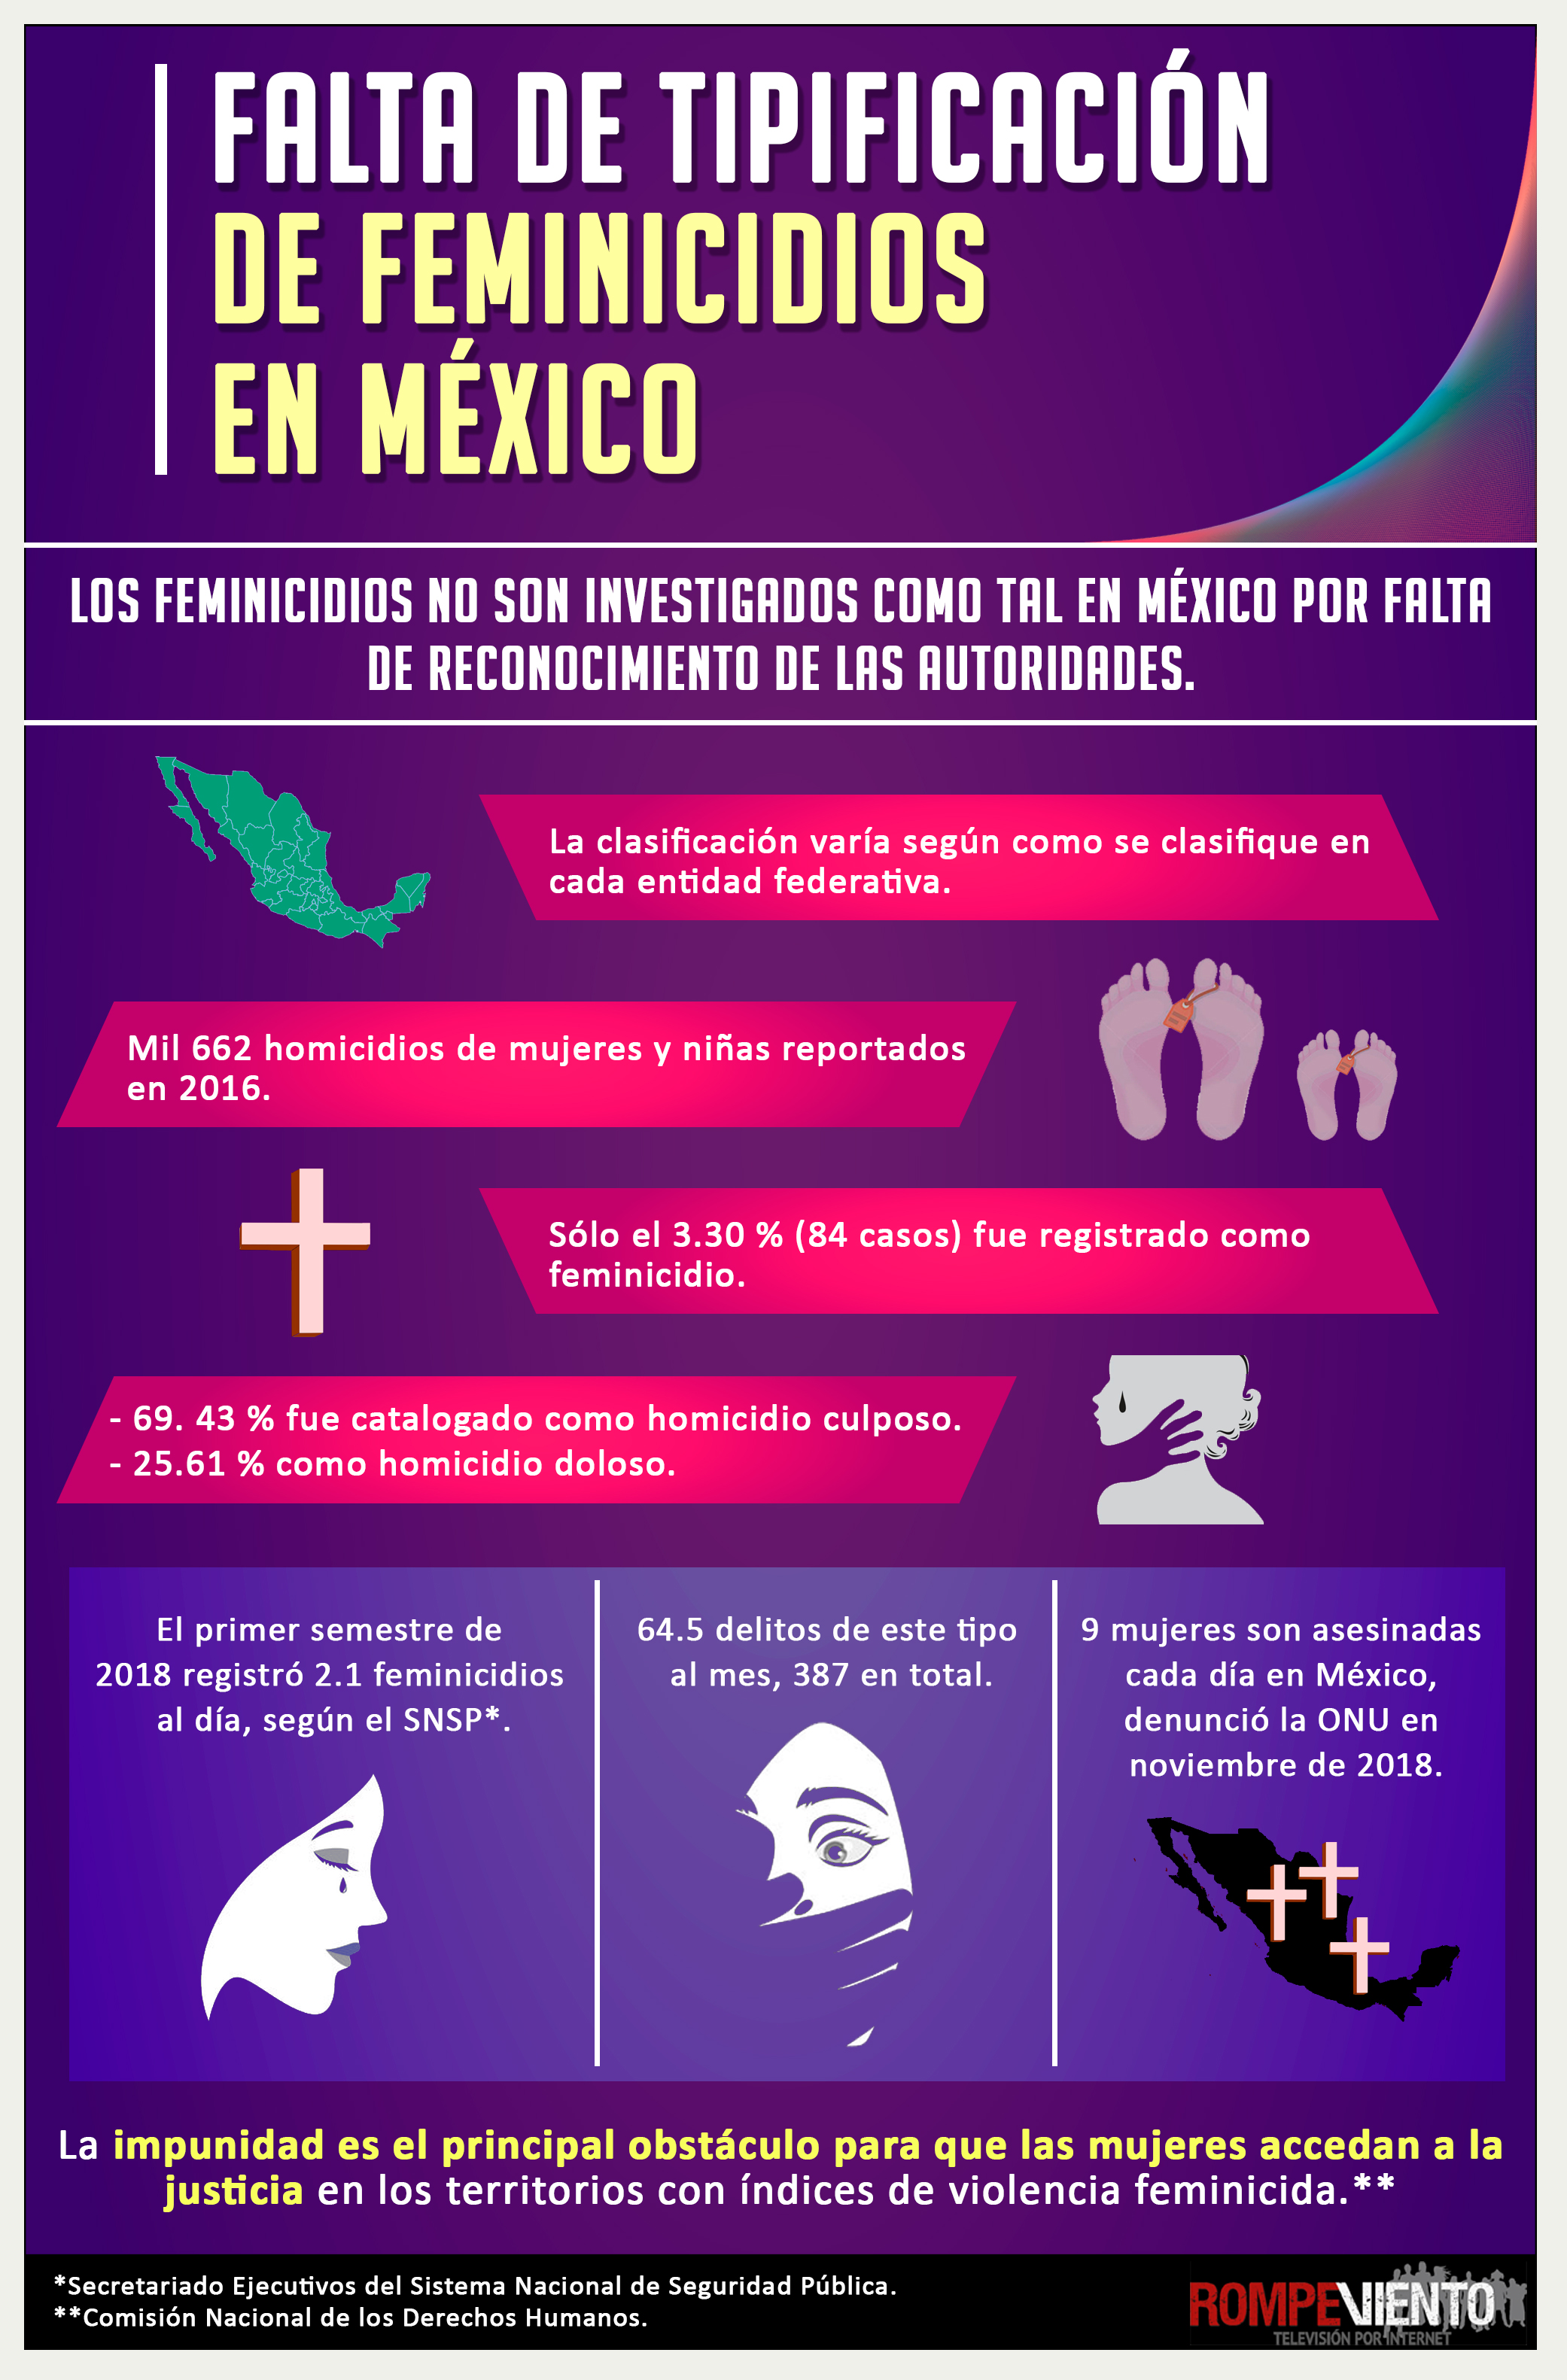 Falta de tipificación de feminicidios en México - Infografía